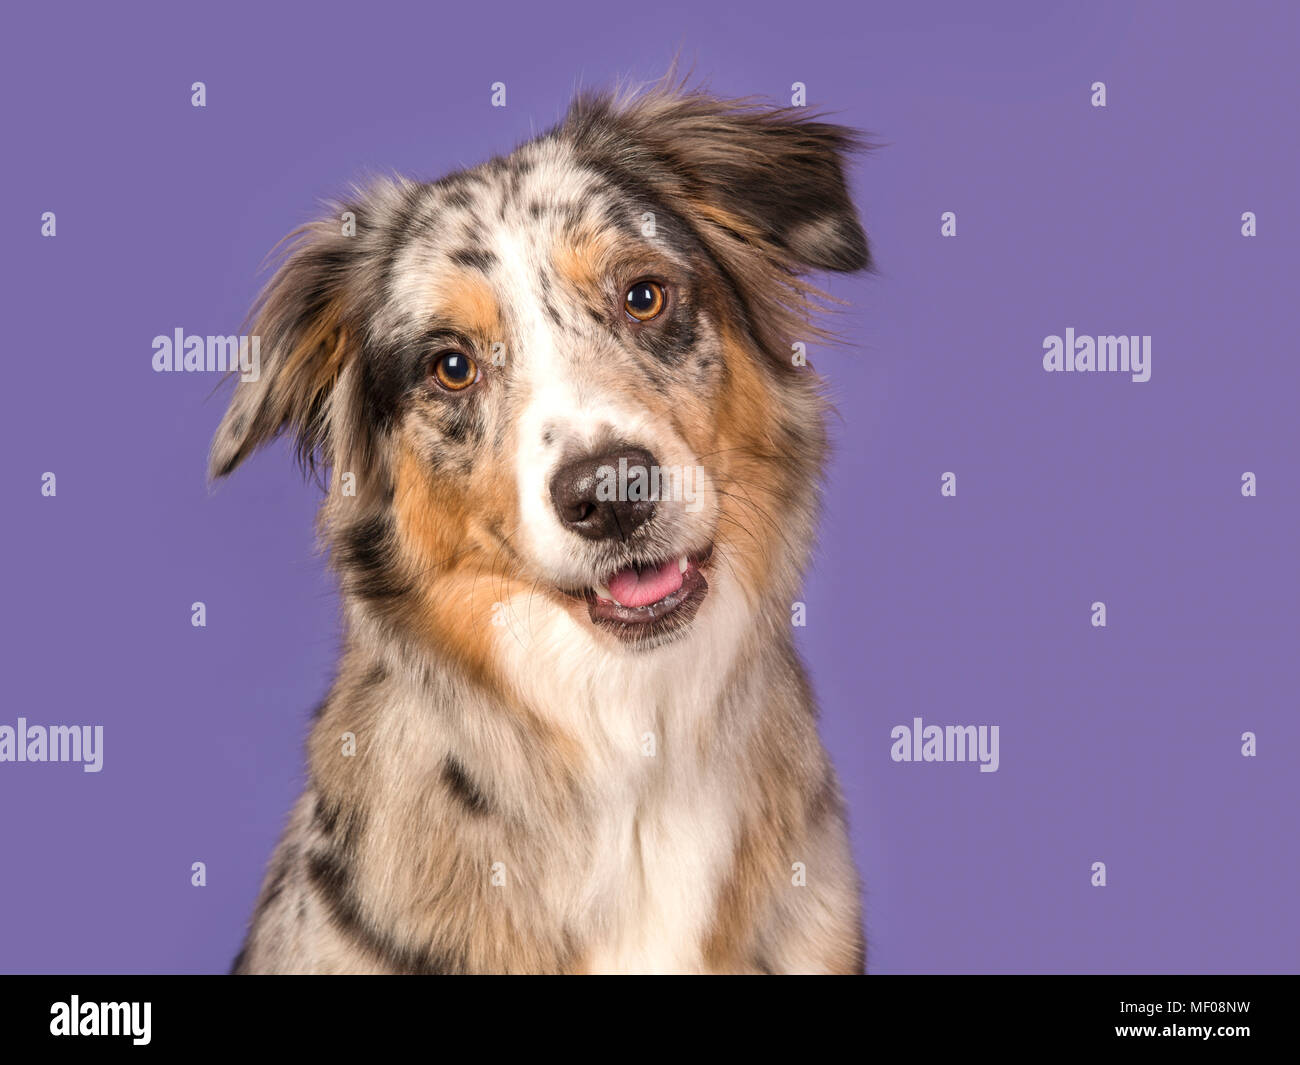 Porträt eines hübschen Australian Shepherd Dog auf einem violetten Hintergrund in ein horizontales Bild Stockfoto